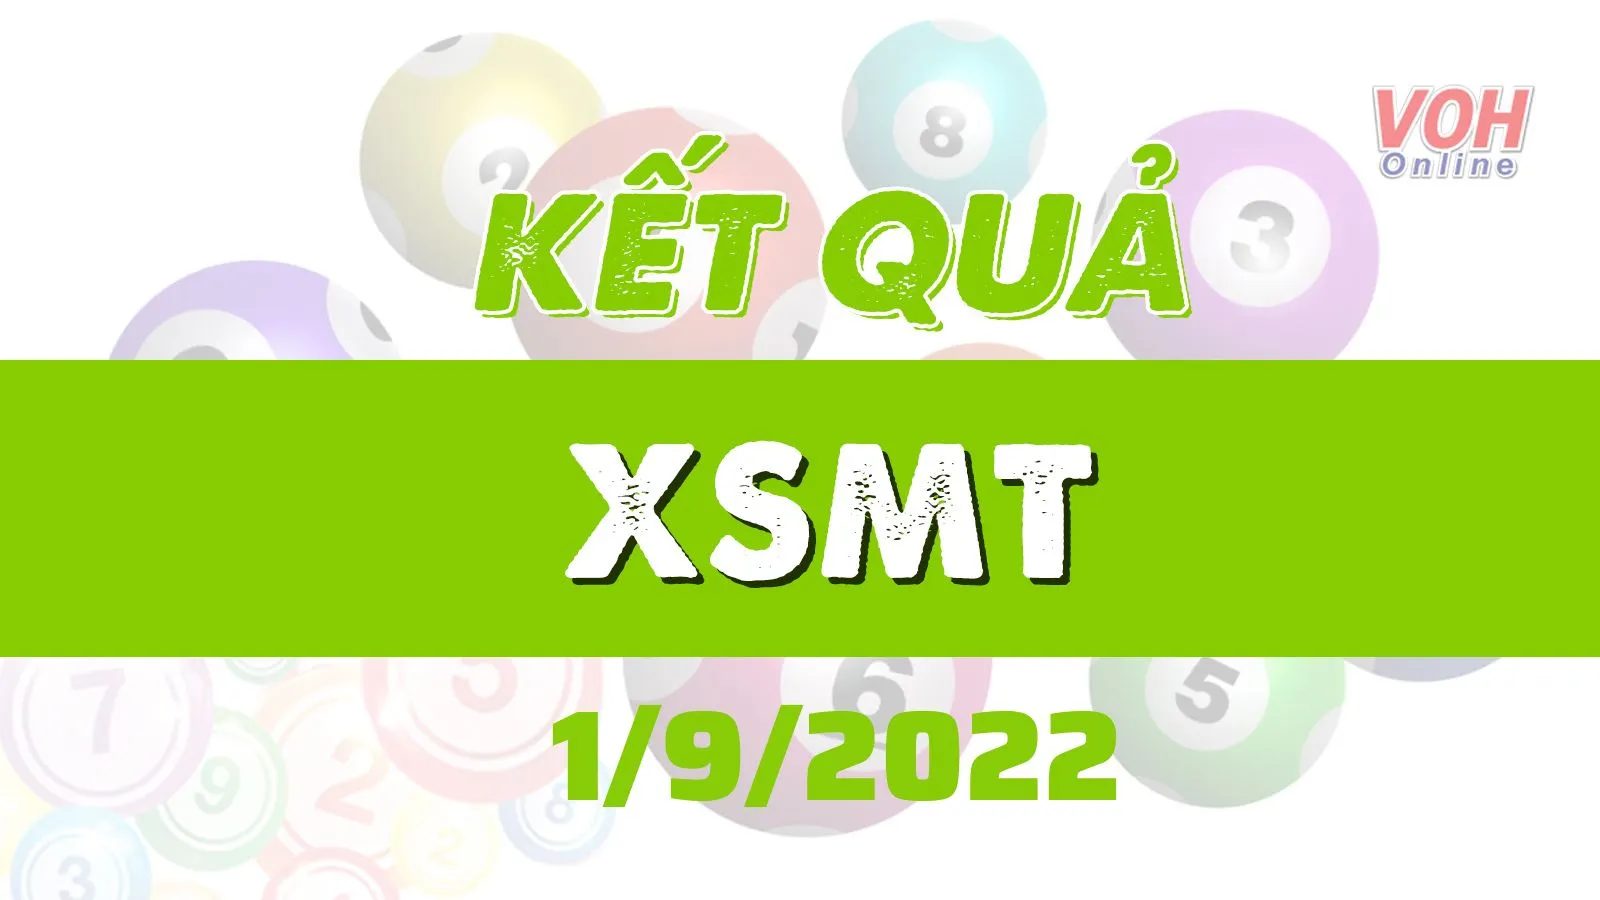 Xổ số miền Trung hôm nay, XSMT 1/9, SXMT 1/9/2022 - Kết quả xổ số ngày 1 tháng 9